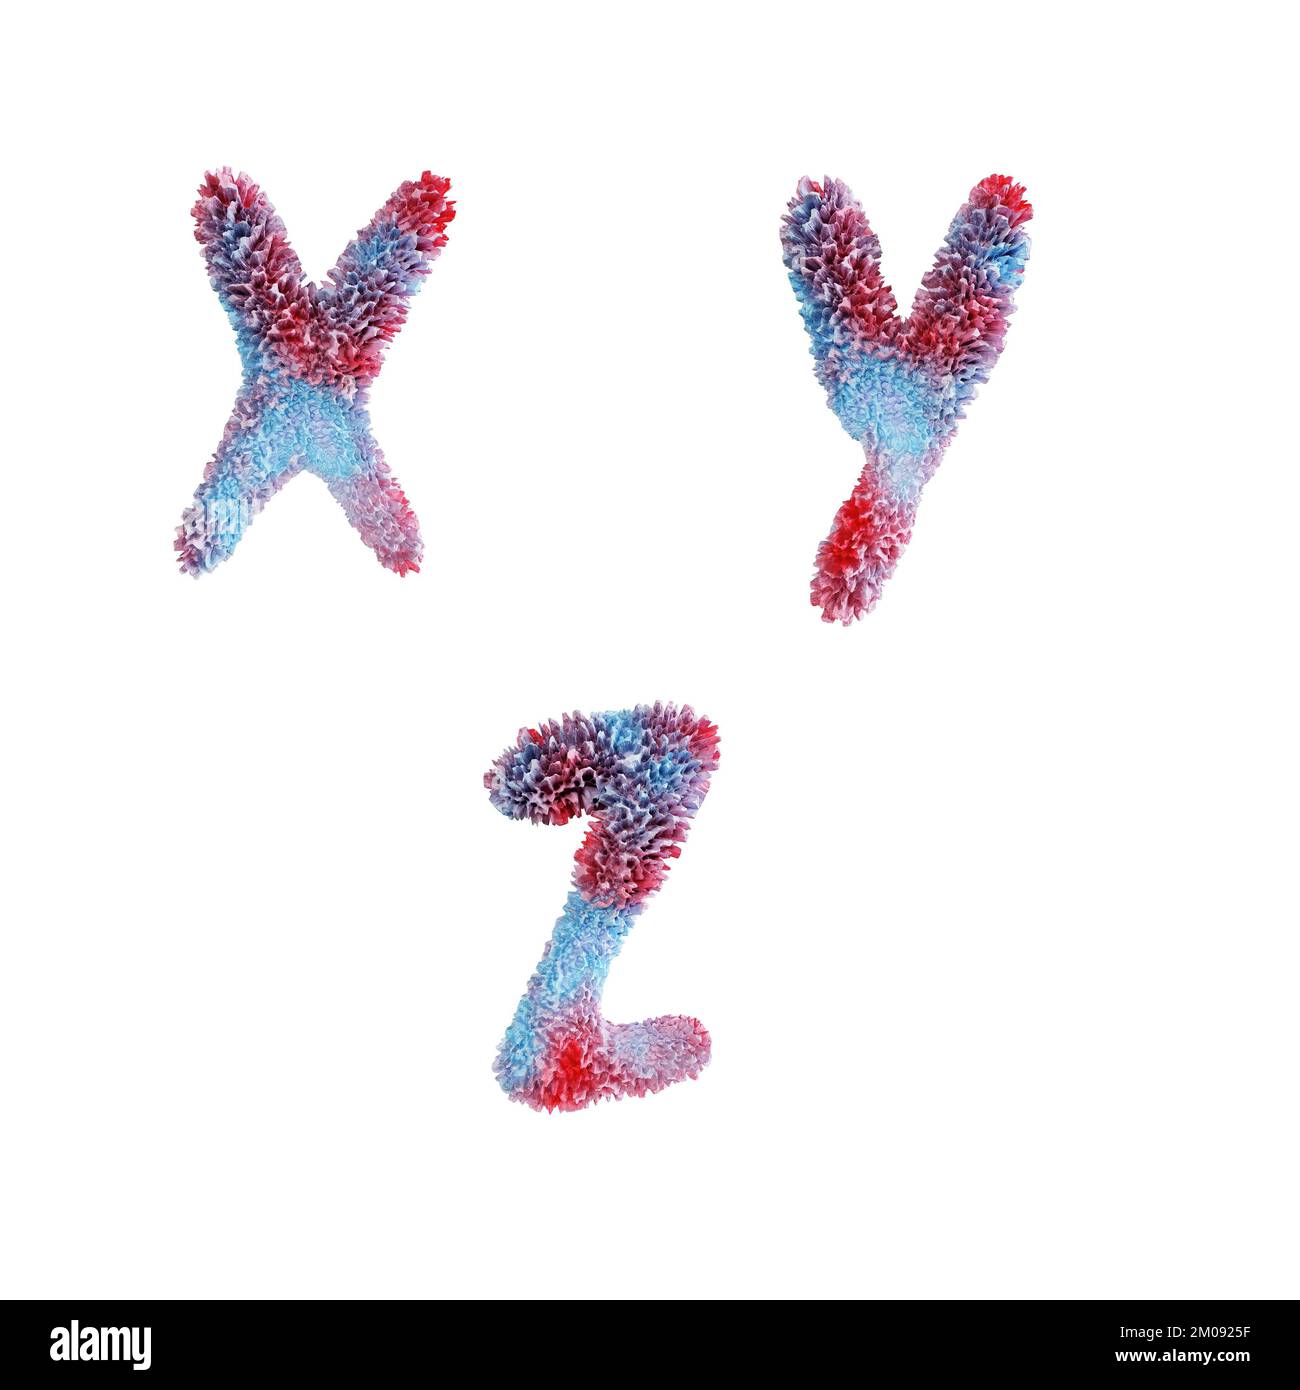 3D rappresentazione dell'alfabeto maiuscolo della barriera corallina - lettere X-Z Foto Stock